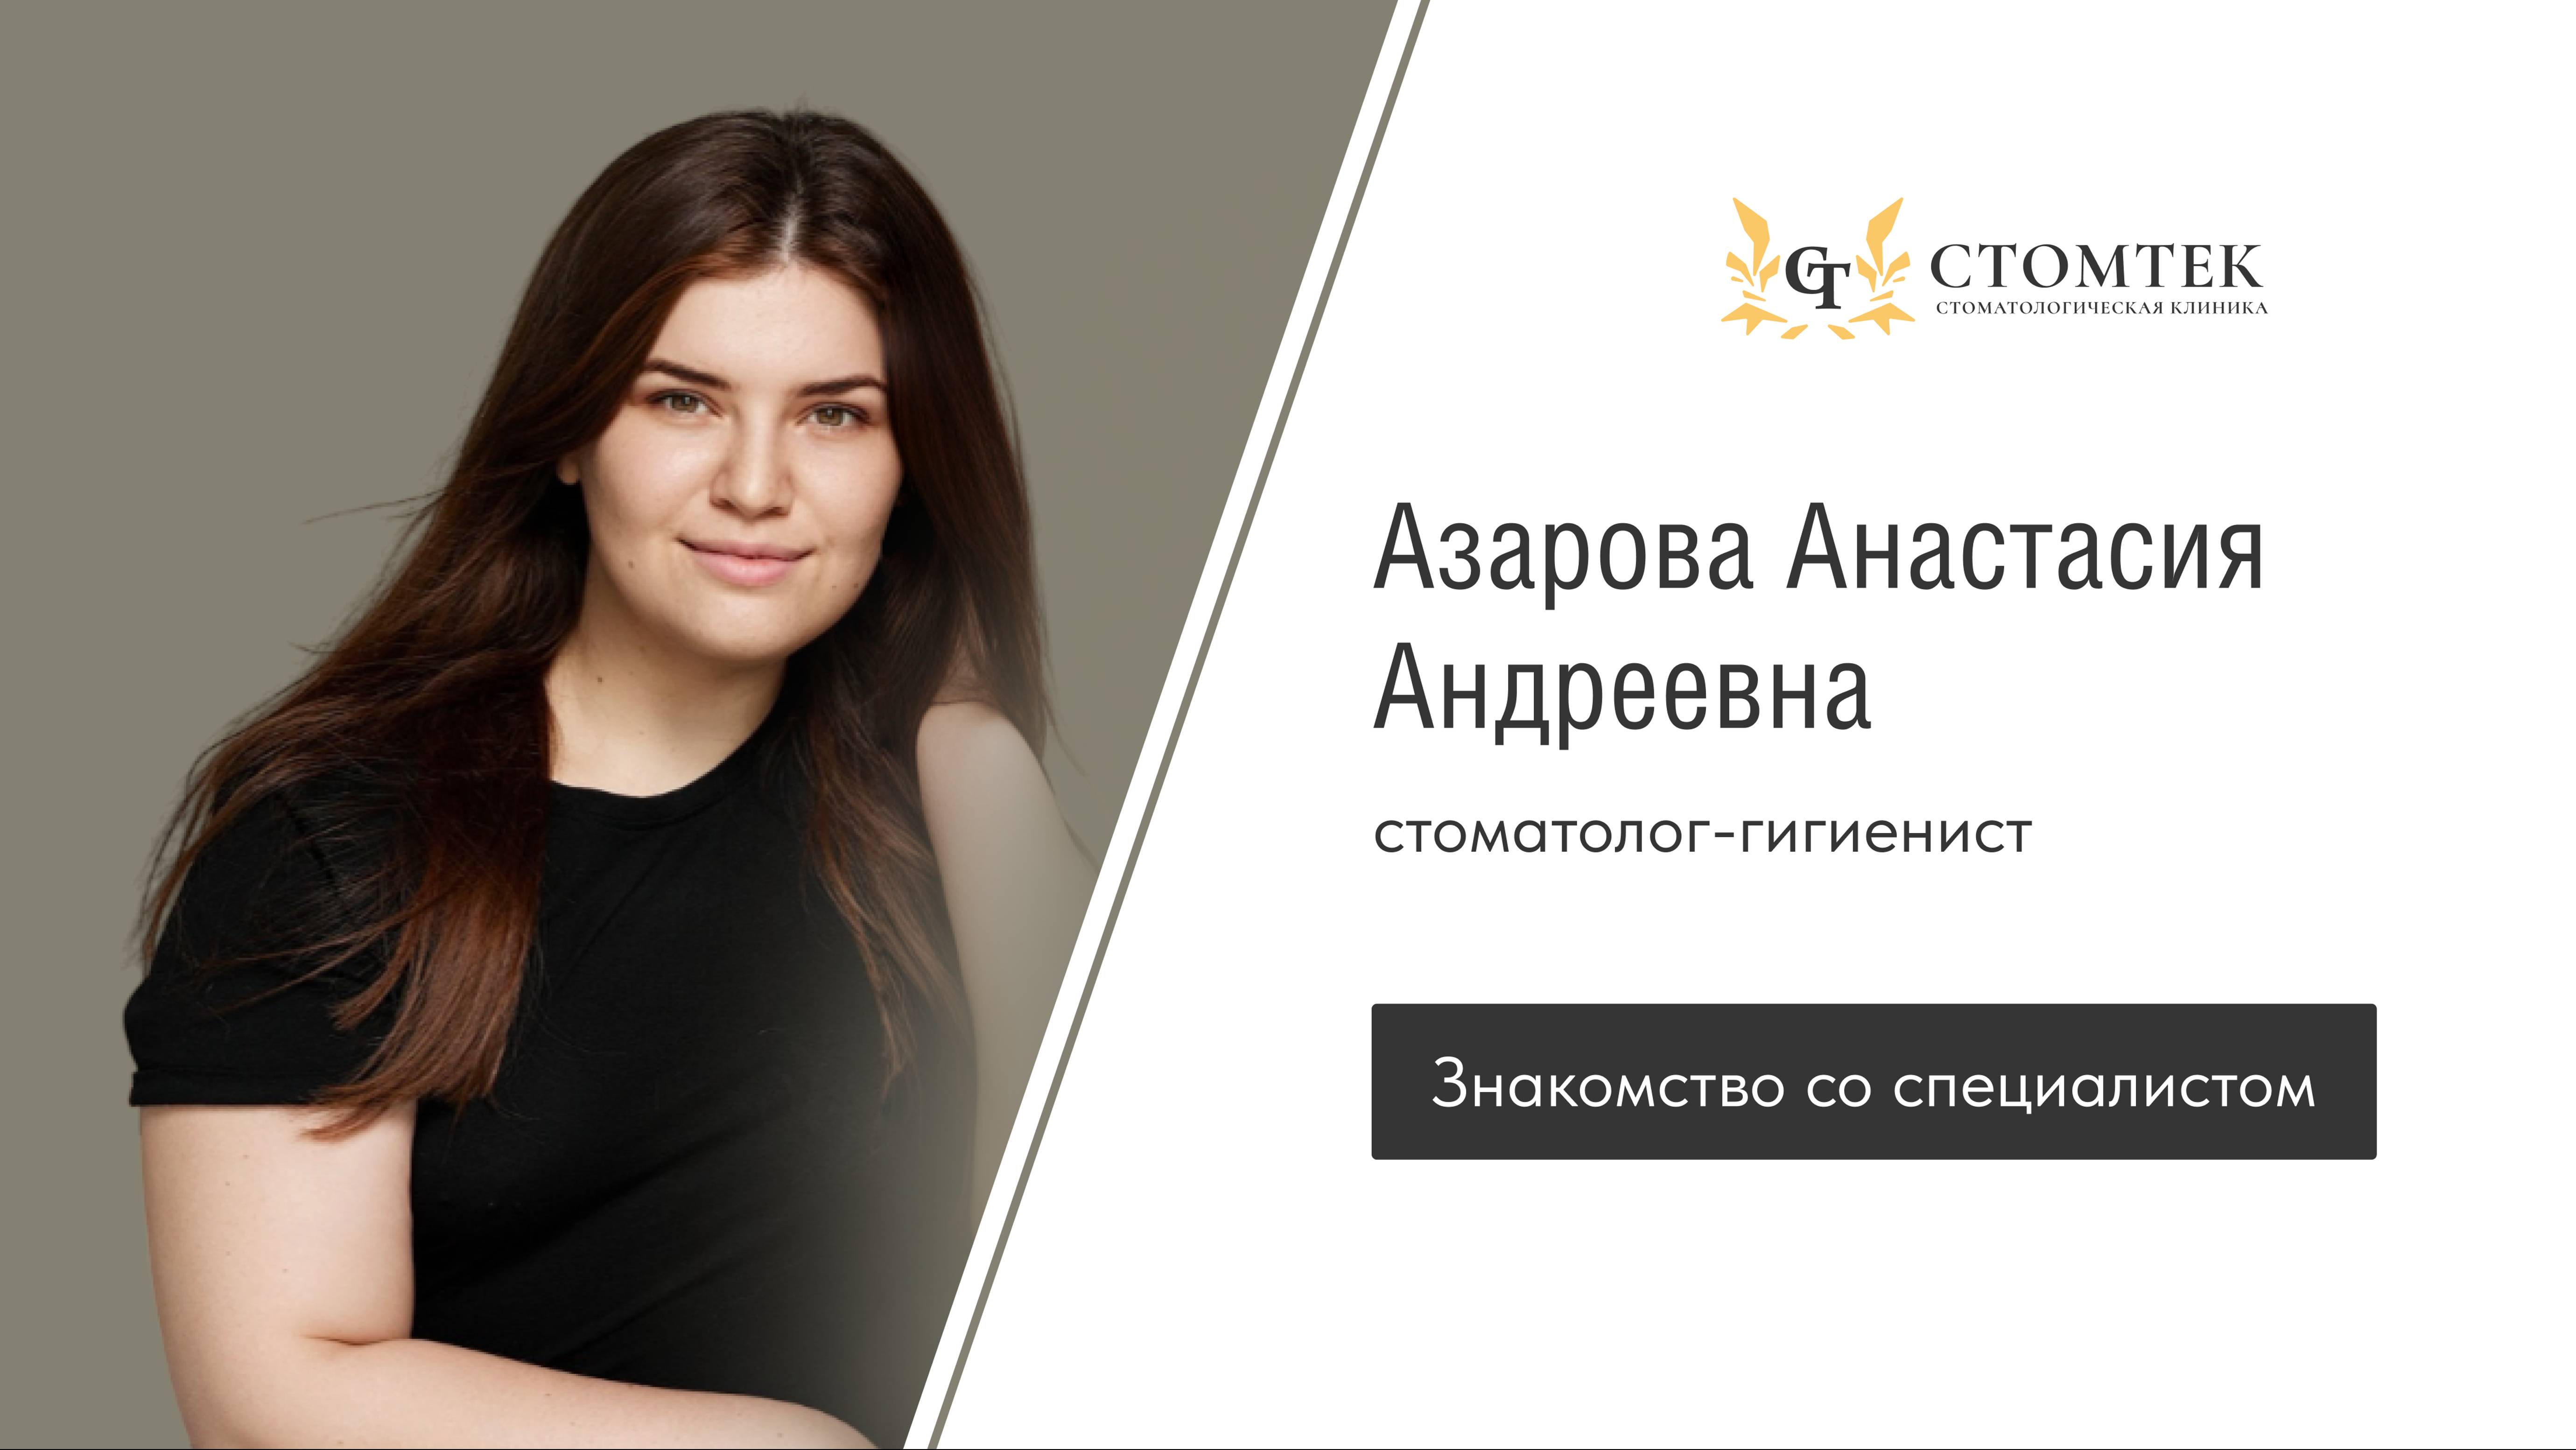 Стоматолог-гигиенист стоматологической клиники "Стомтек" Азарова Анастасия Андреевна